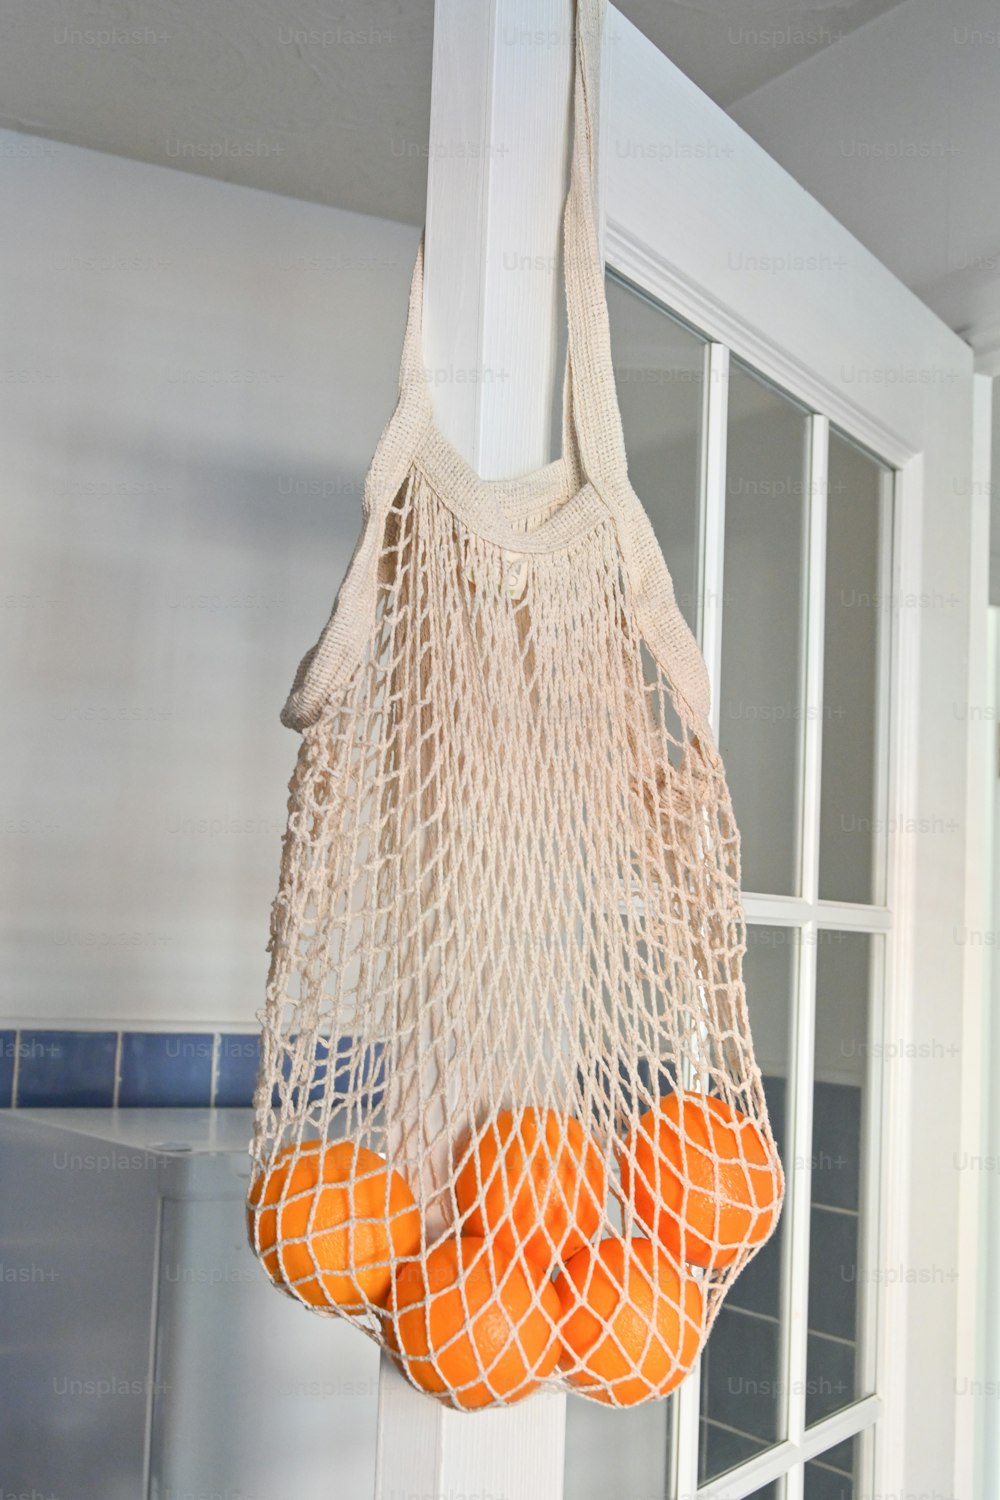 Una bolsa de naranjas colgando de un gancho